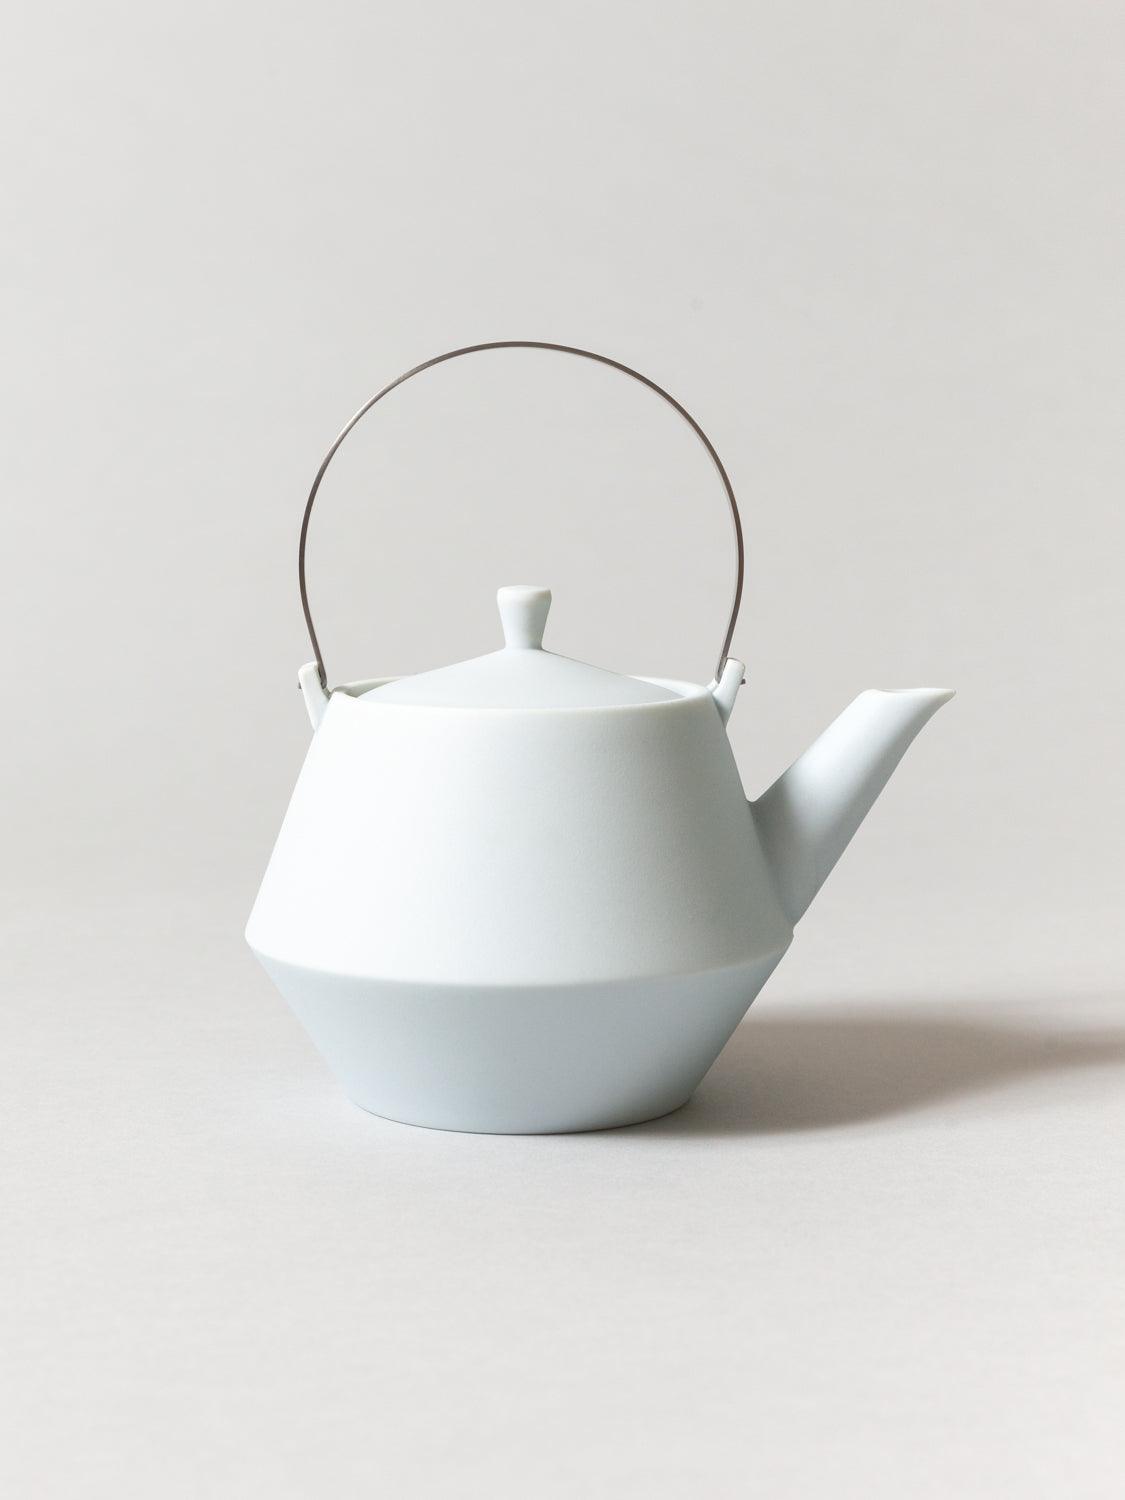 Frustum Porcelain Teapot